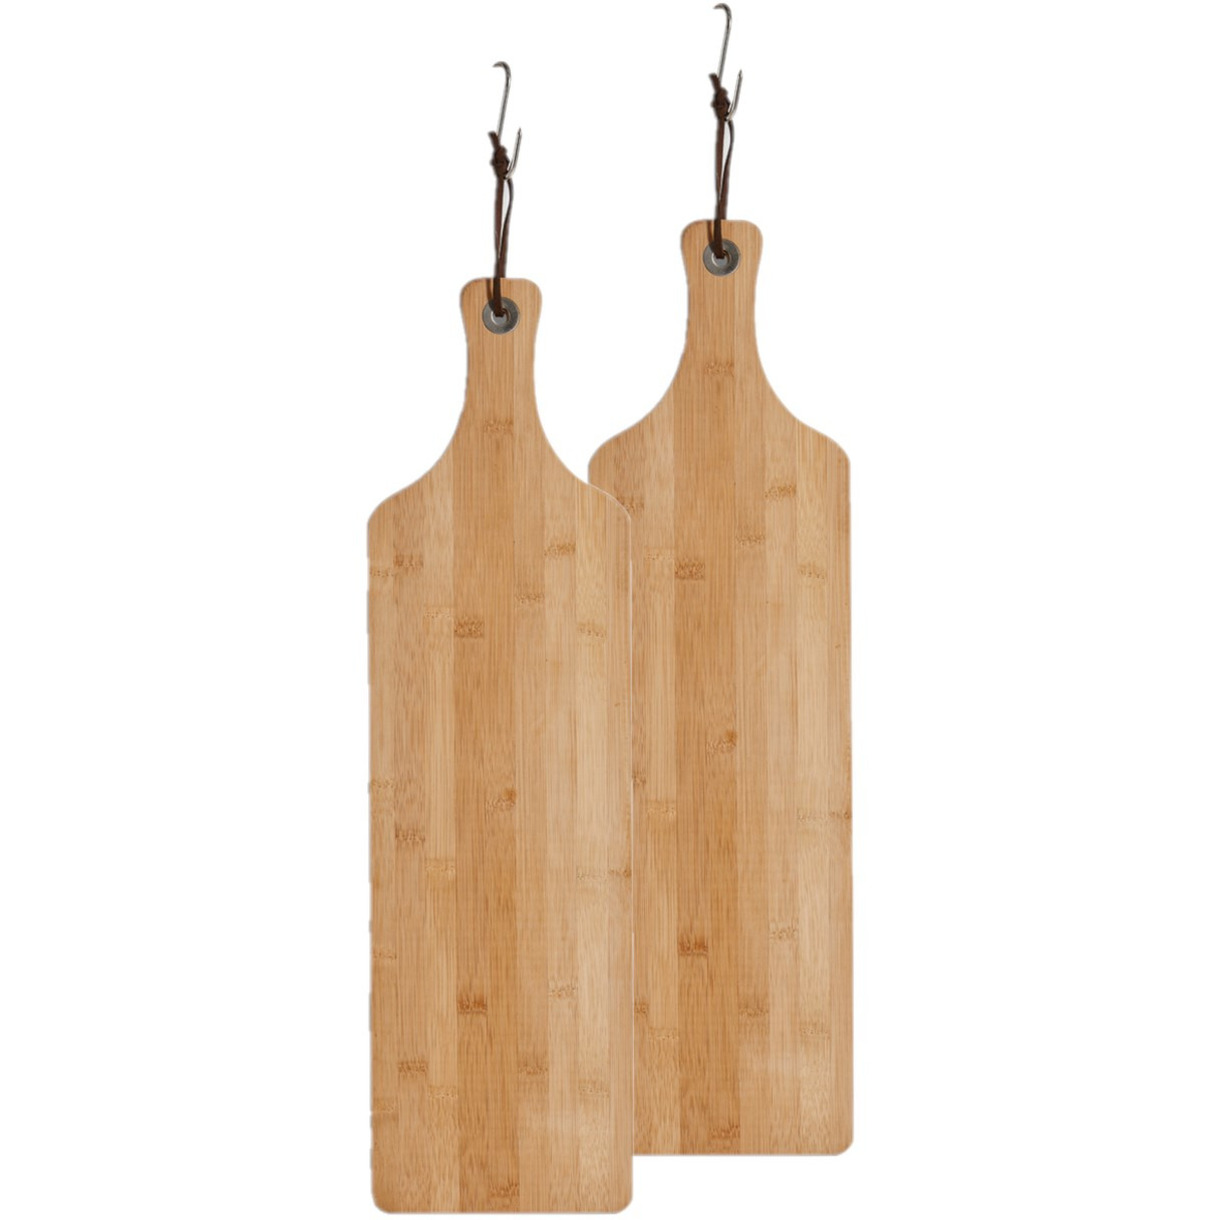 2x stuks bamboe houten snijplanken-serveerplanken met handvat 57 x 16 cm